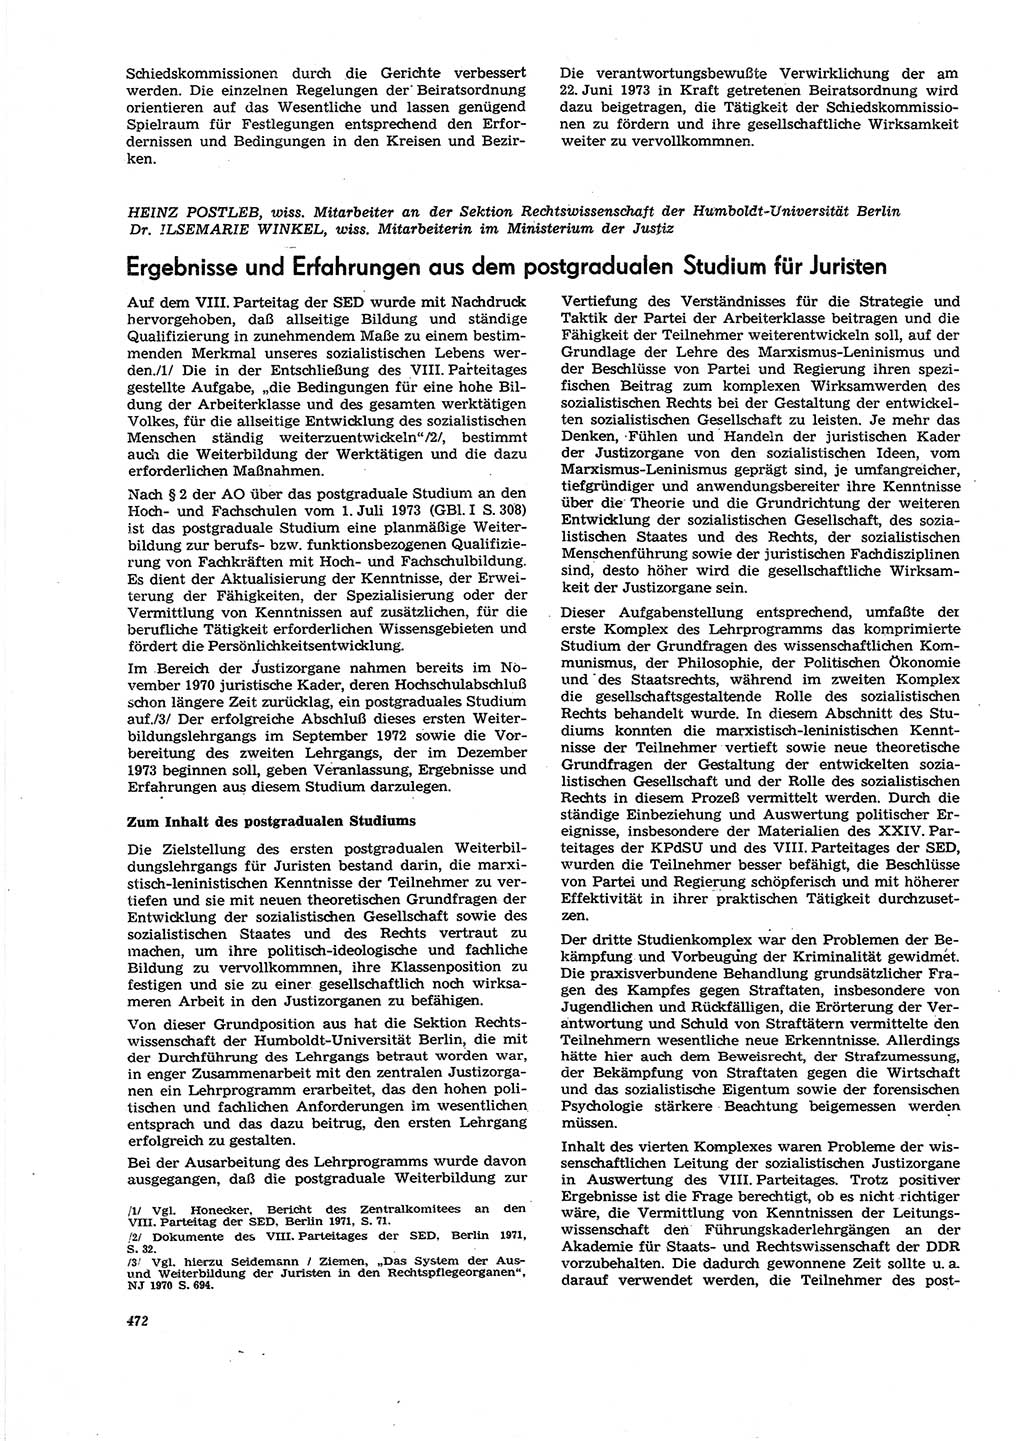 Neue Justiz (NJ), Zeitschrift für Recht und Rechtswissenschaft [Deutsche Demokratische Republik (DDR)], 27. Jahrgang 1973, Seite 472 (NJ DDR 1973, S. 472)